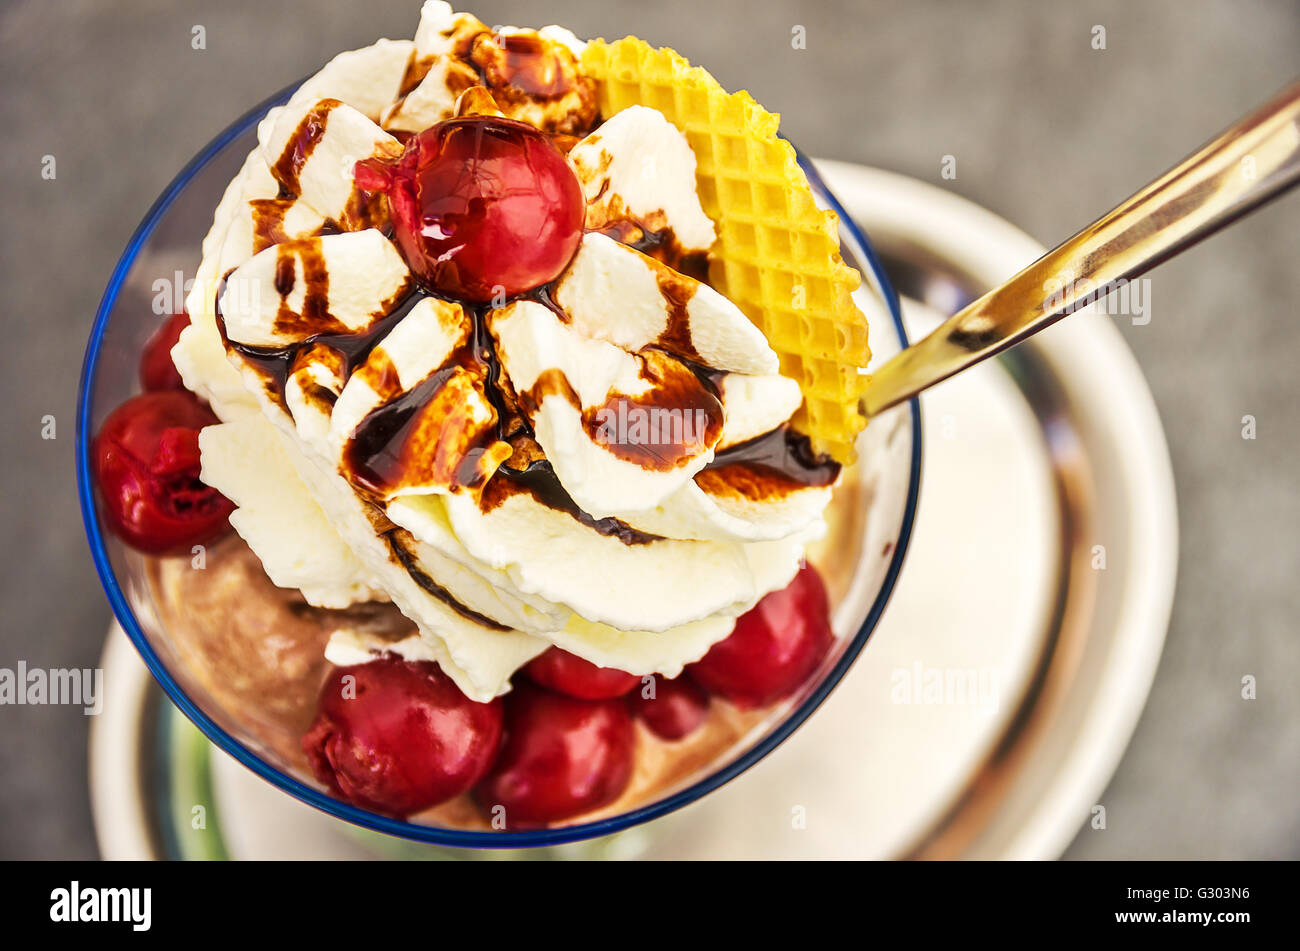 Sundae with cherries and whipped cream. Stock Photo